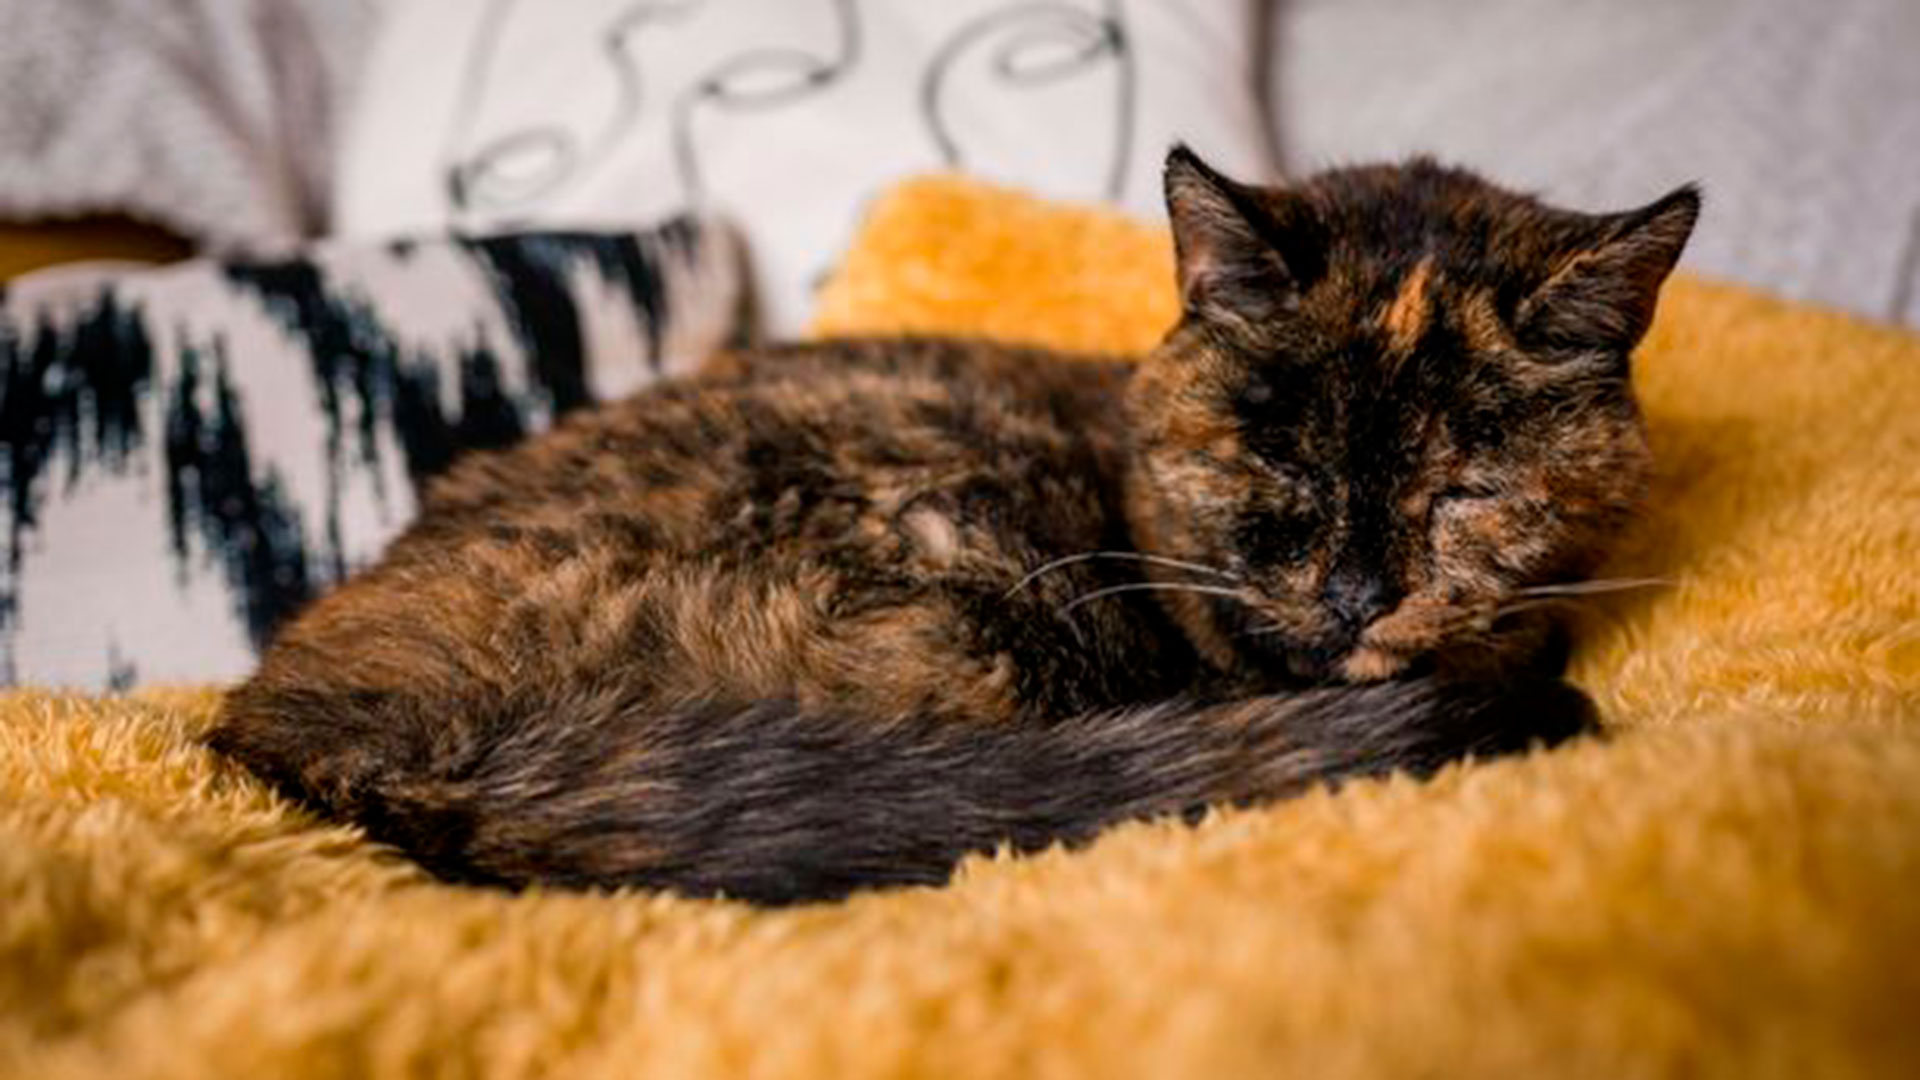 Su nueva dueña espera que el caso de Flossie influye para que las personas adopten a más gatos viejos (Cats Protection / Guinness World Records)